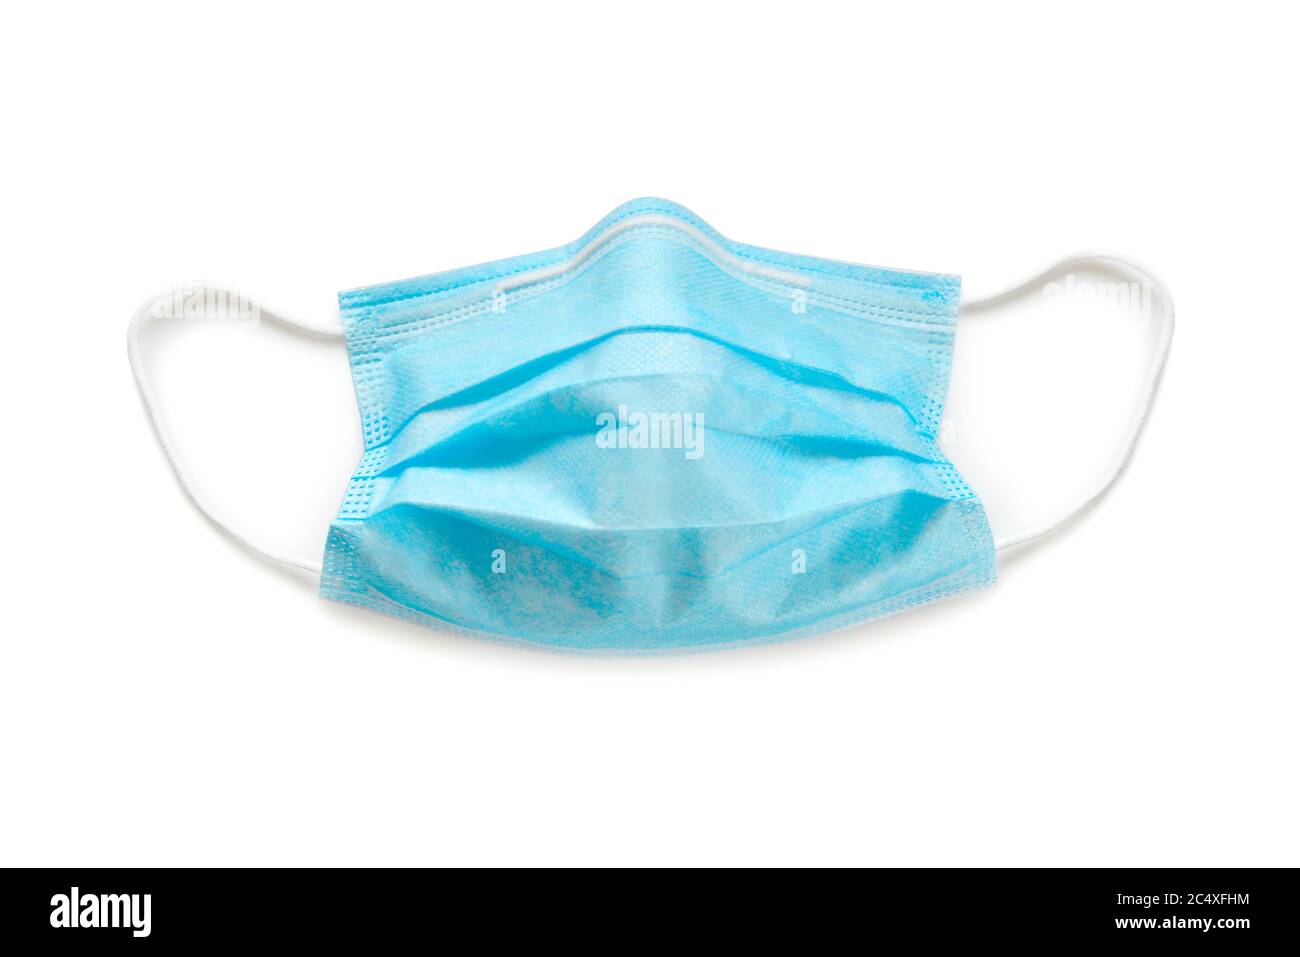 Équipement de protection individuelle pour masque facial coronavirus Banque D'Images